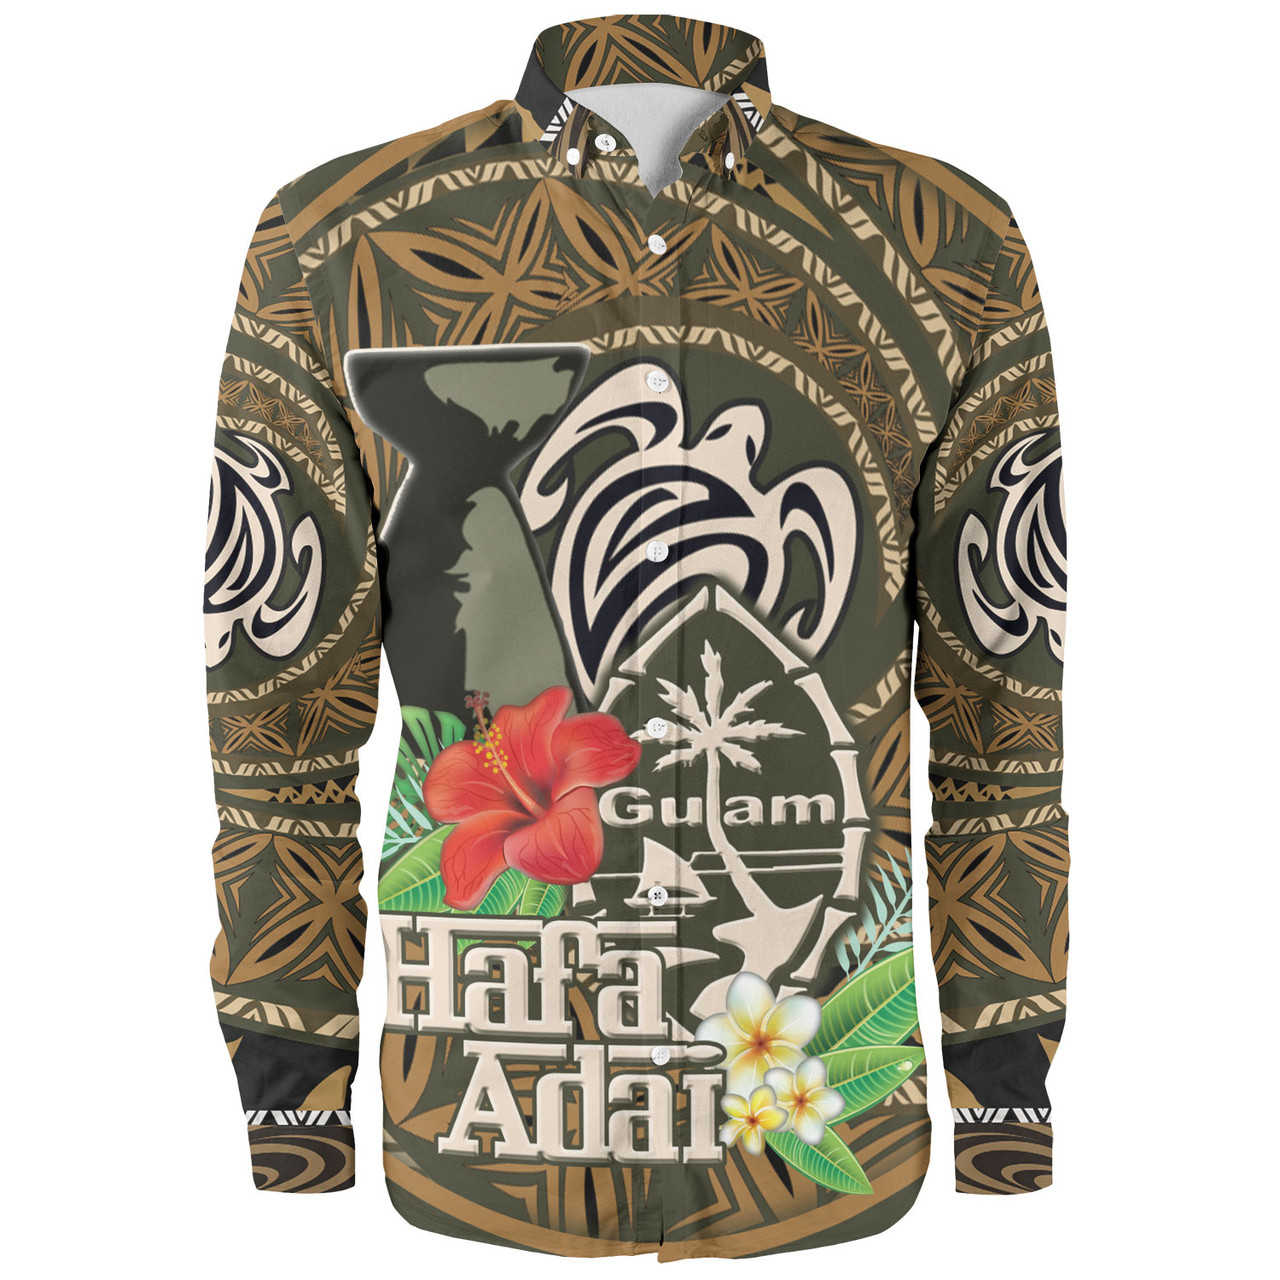 Guam Custom Personalised Long Sleeve Shirt Hafa Adai Seal Flower Tropical Retro Style